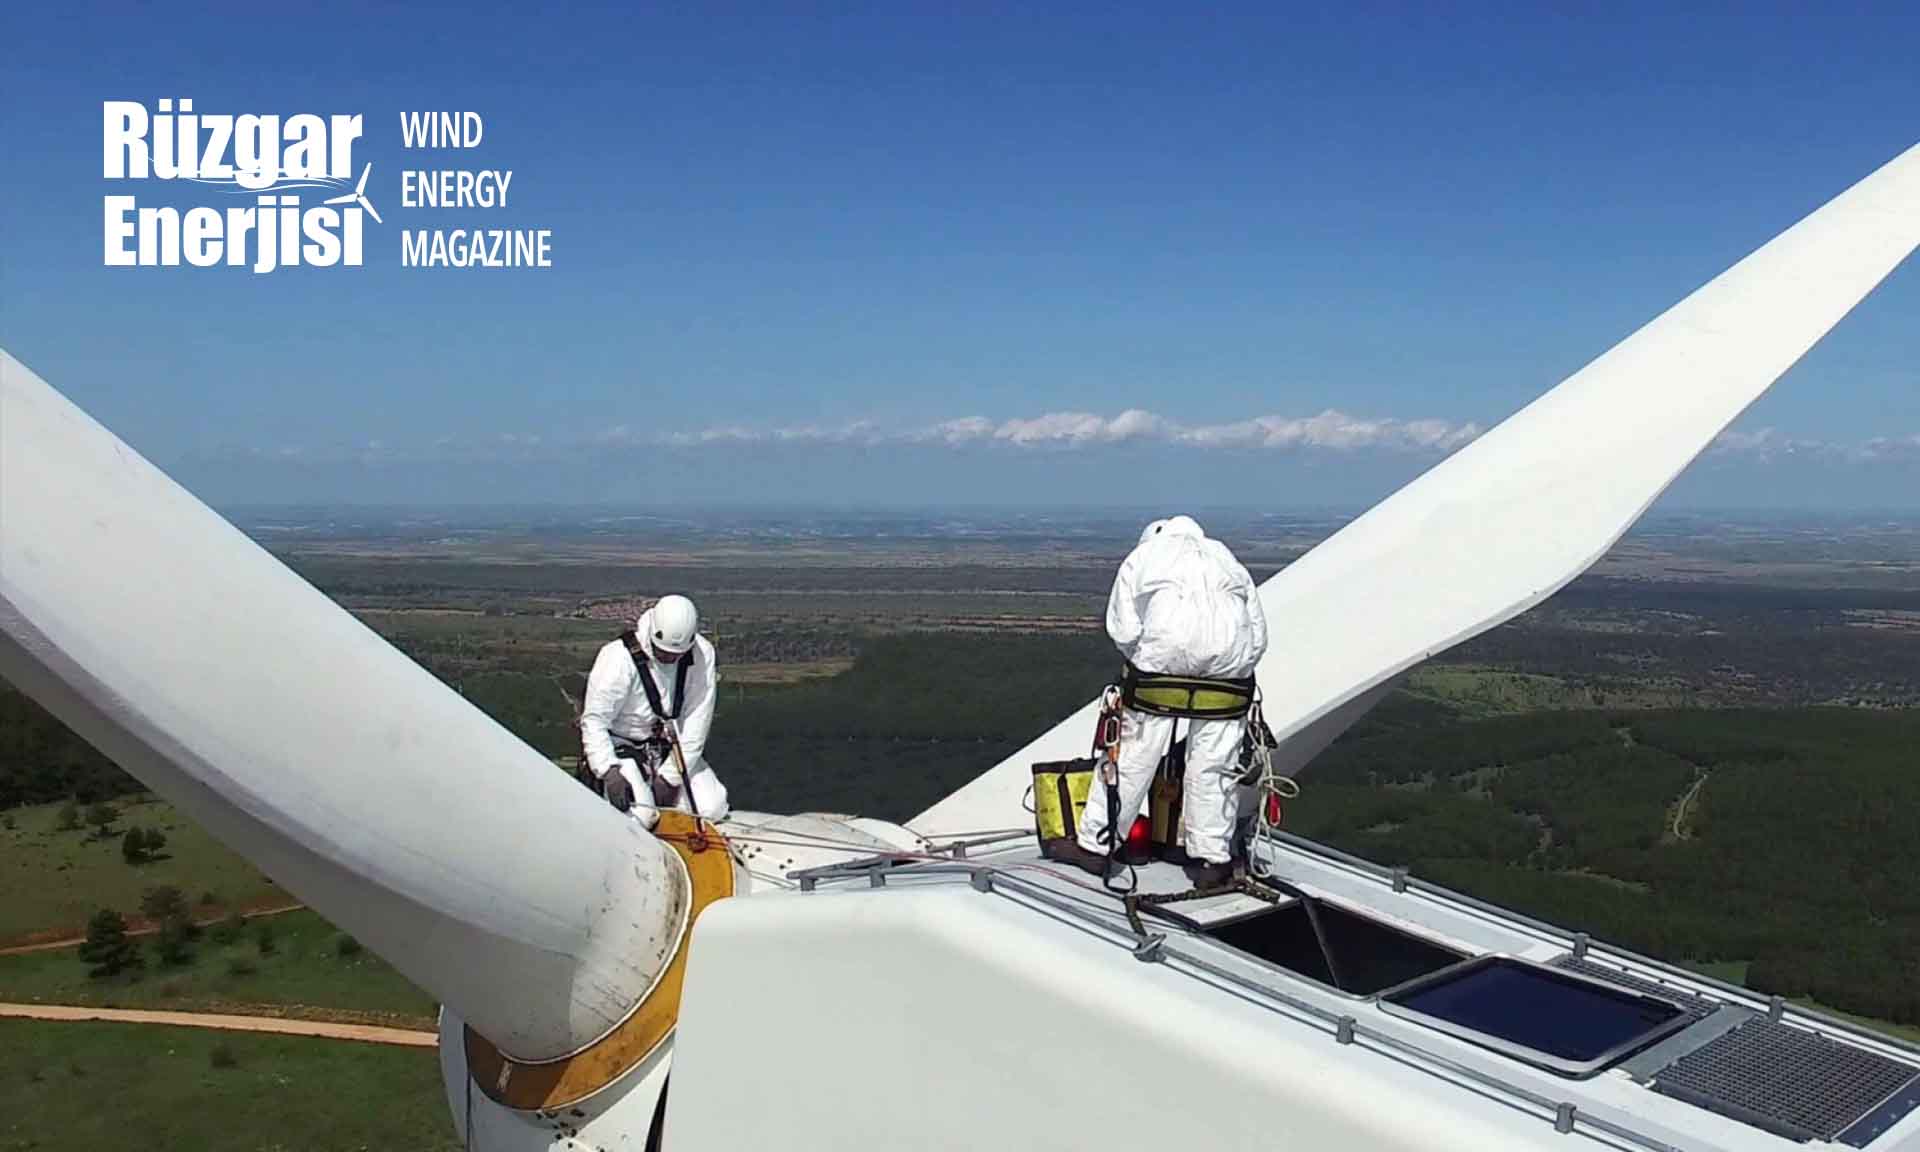 EMBER: Hedefler, rüzgar kapasitesinde 2030’a kadar 3 kat artış gösteriyor